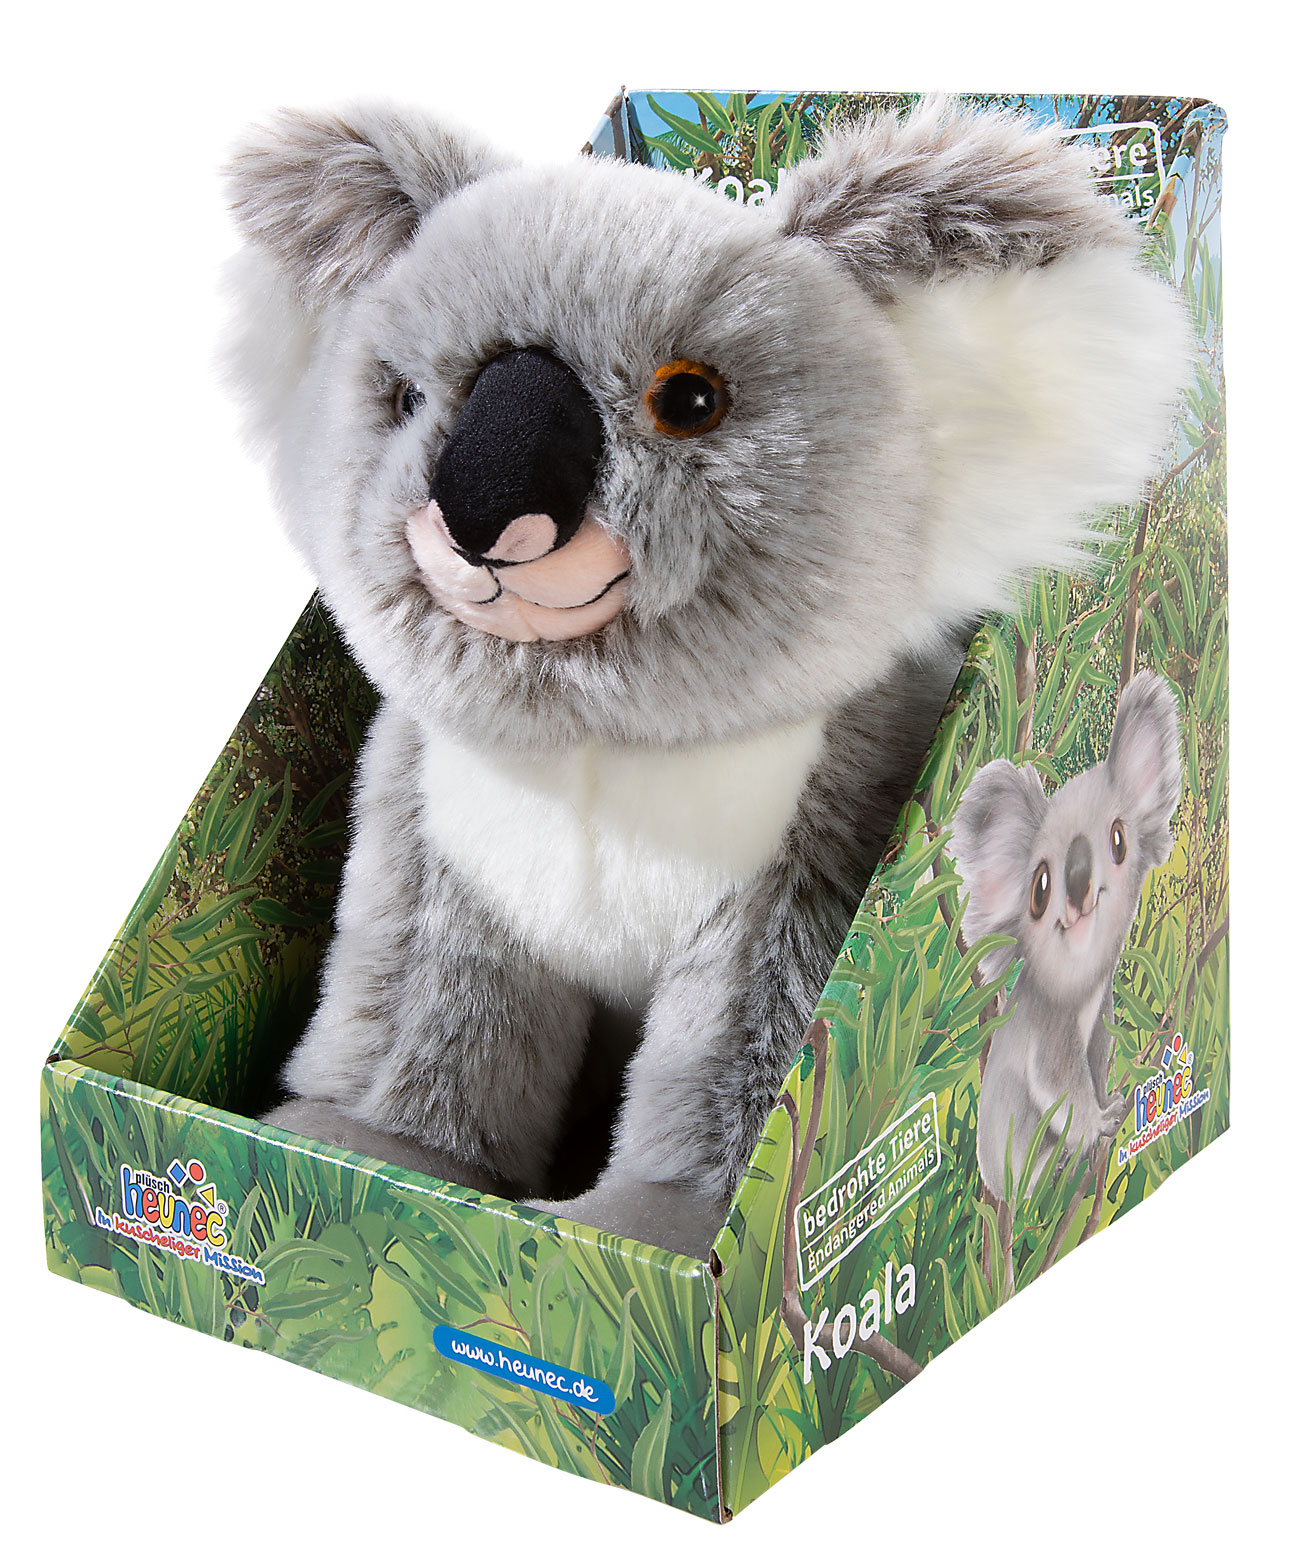 Heunec Koala Bär aus der Serie Bedrohte Tiere in 28cm mit Display